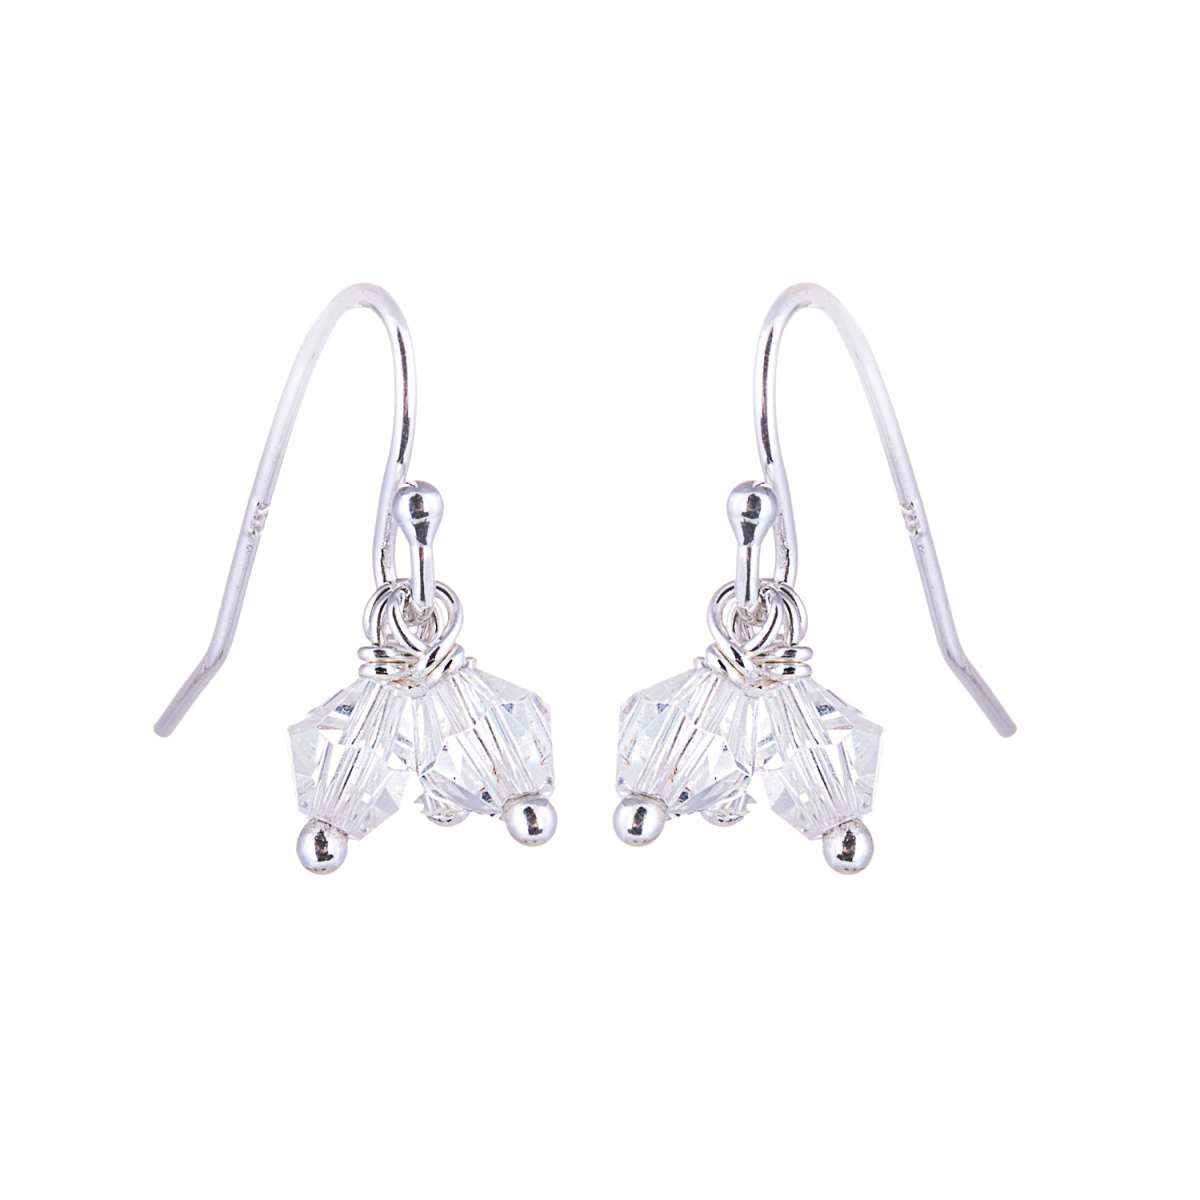 Triple Sterling Silver & Clear CZ Fishhook Earrings